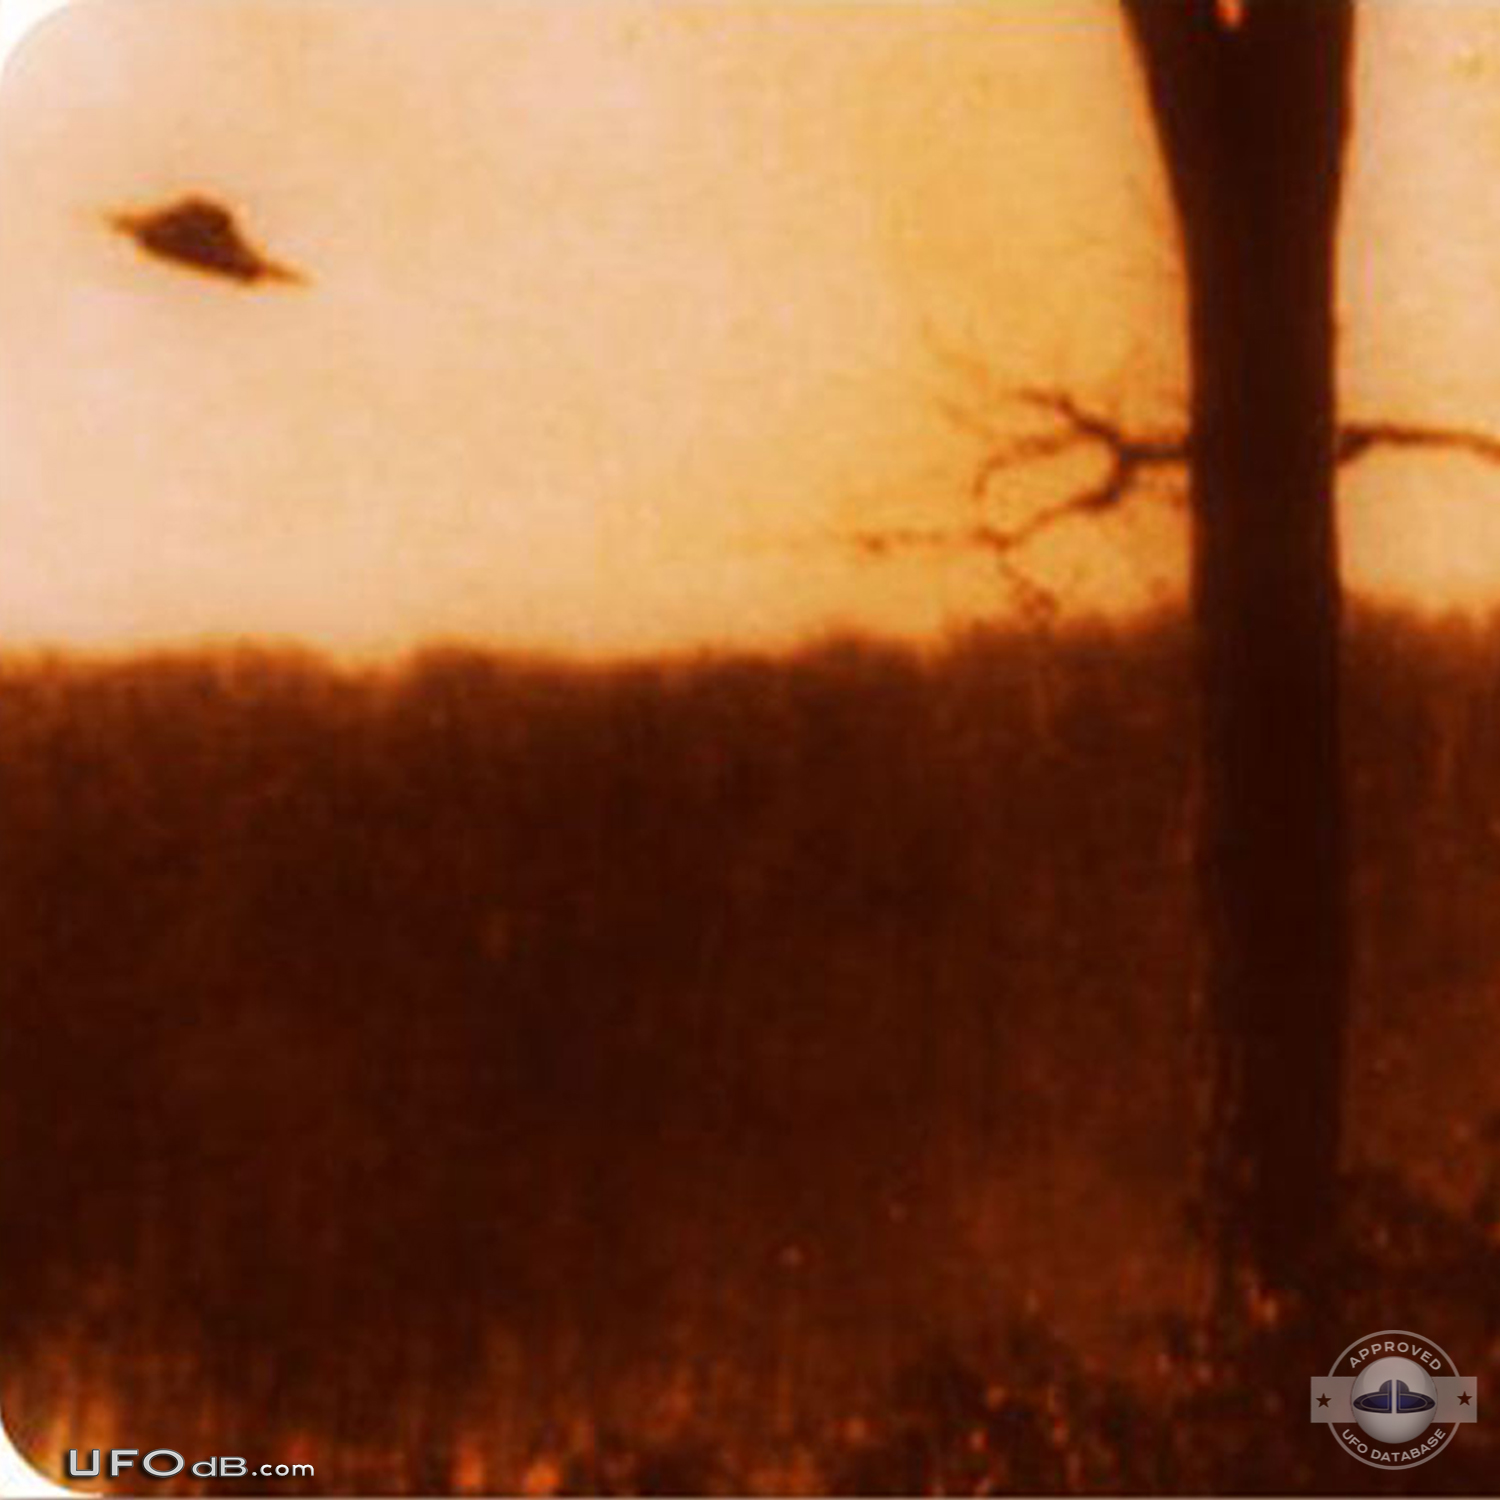 Old 1966 UFO picture taken near Lake Tiorati, Orange County New York UFO Picture #633-3